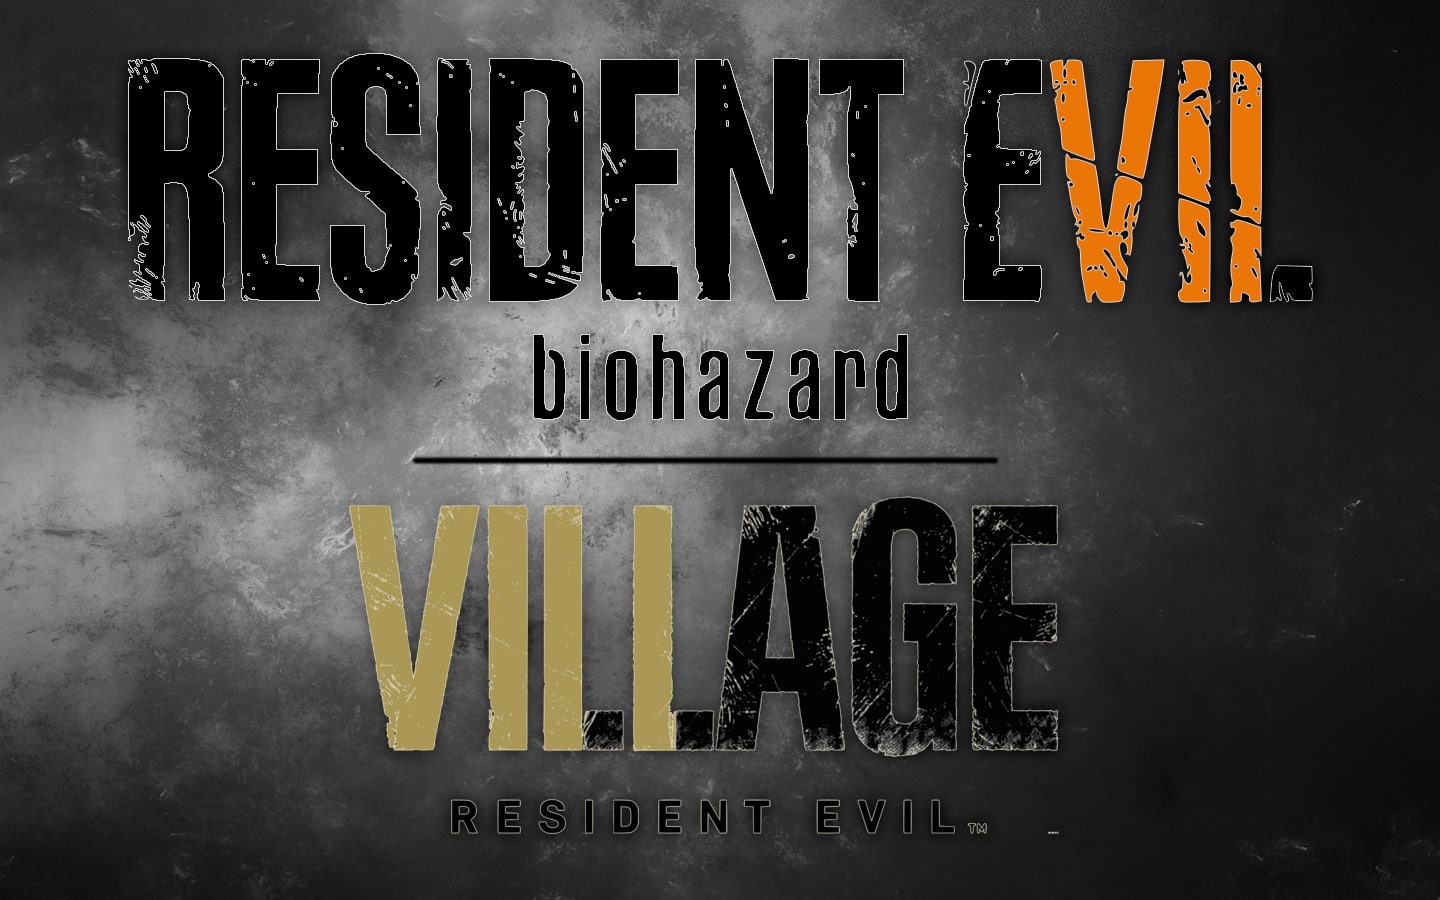 Resident Evil logos